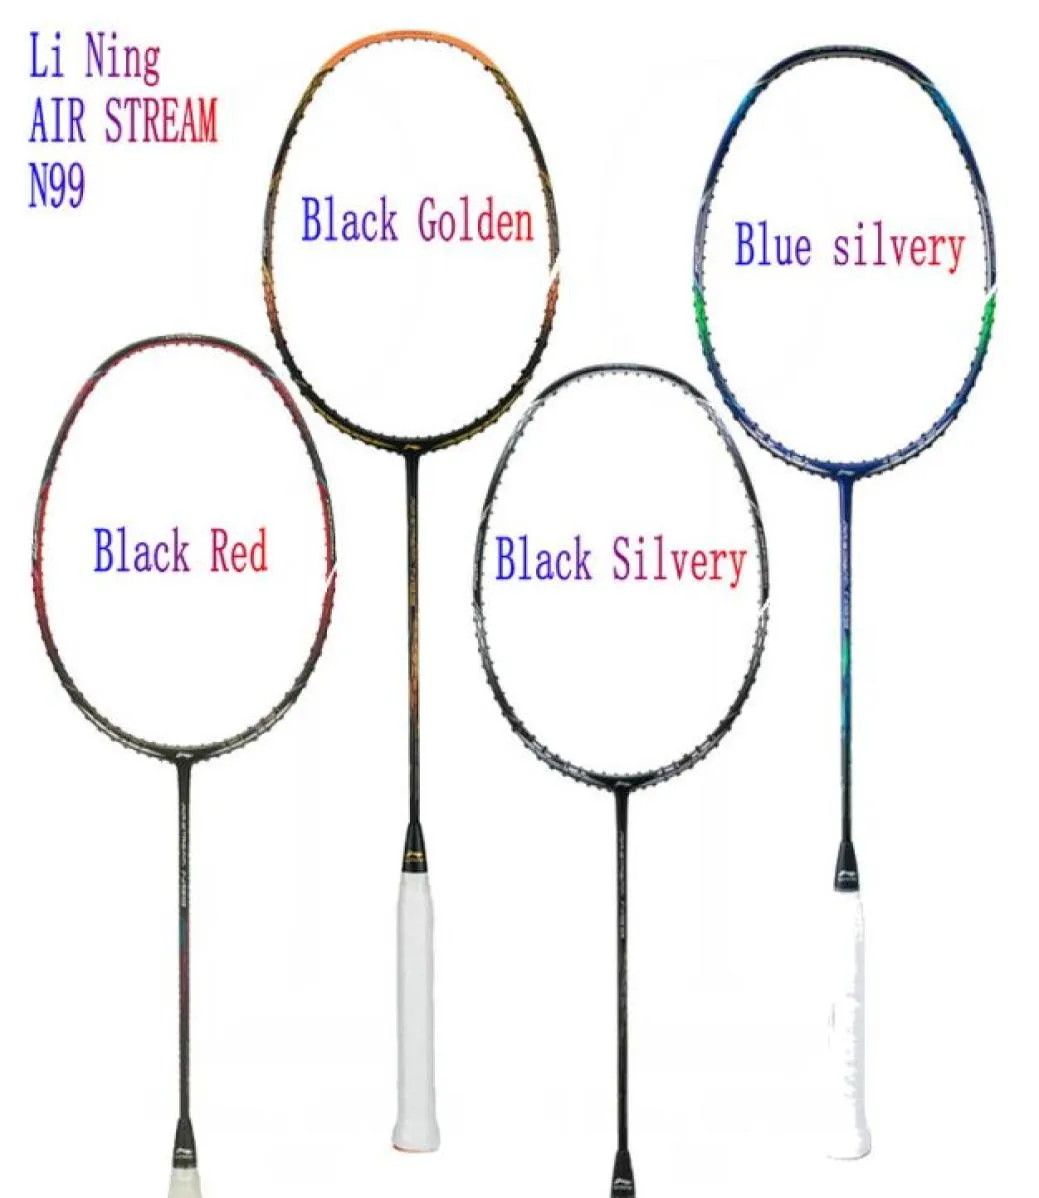 FORRO AIR STREAM N99 II Chen Long Badminton raquete da equipe nacional Raquete de carbono de alta elasticidade Conclusão de linha perfeita85881016937